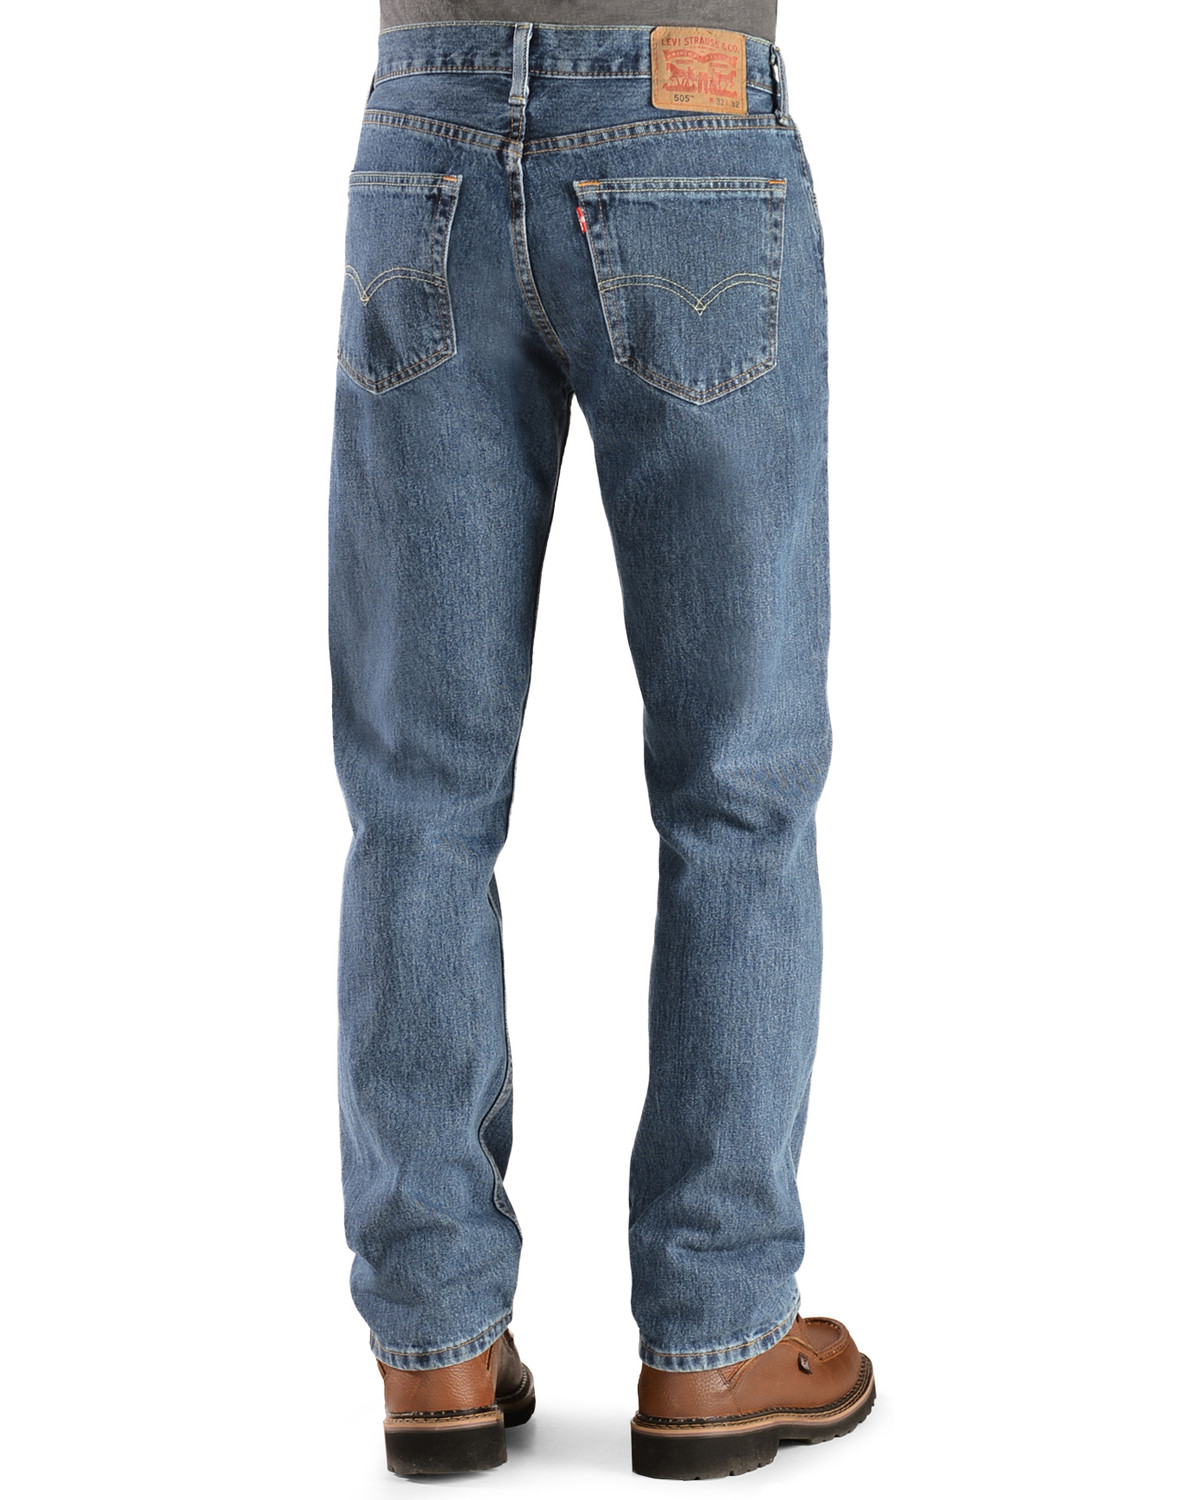 levi 505 men's jeans on sale